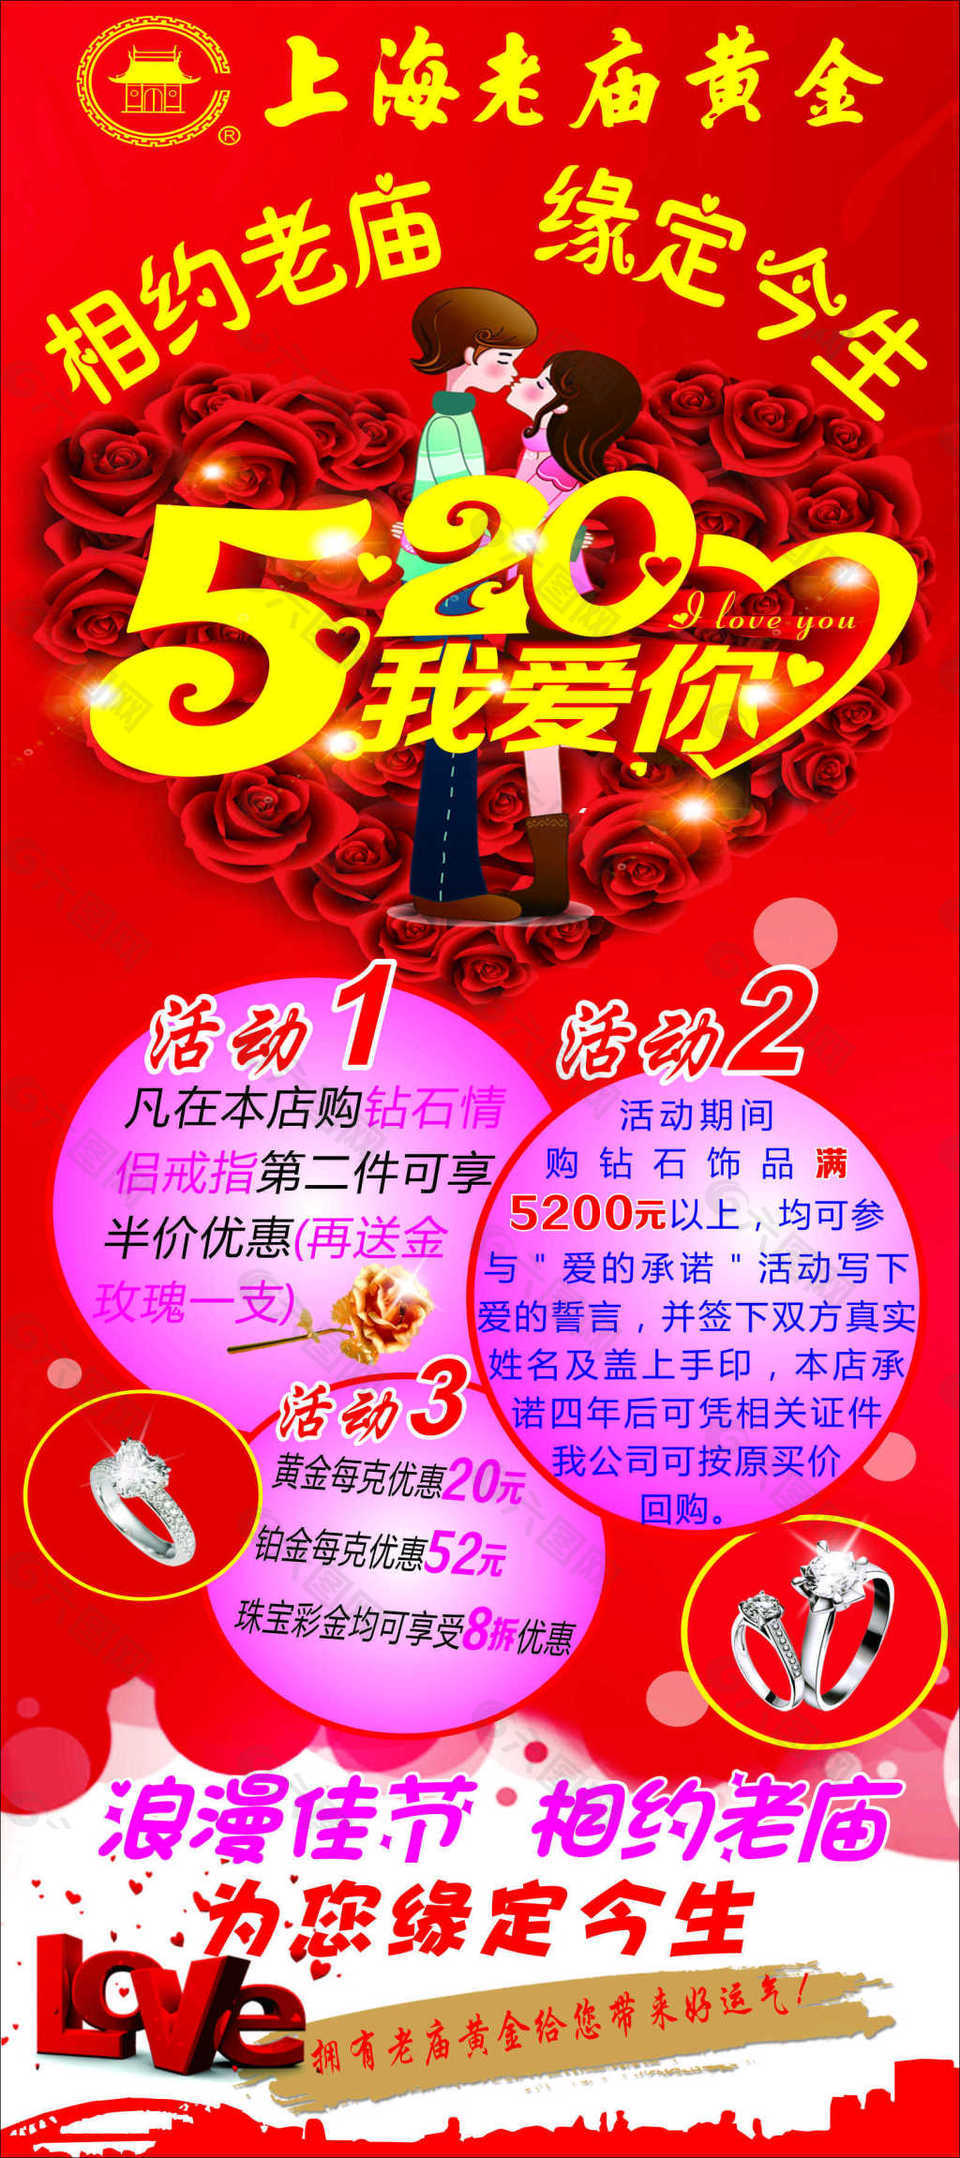 上海老庙黄金 520活动展架